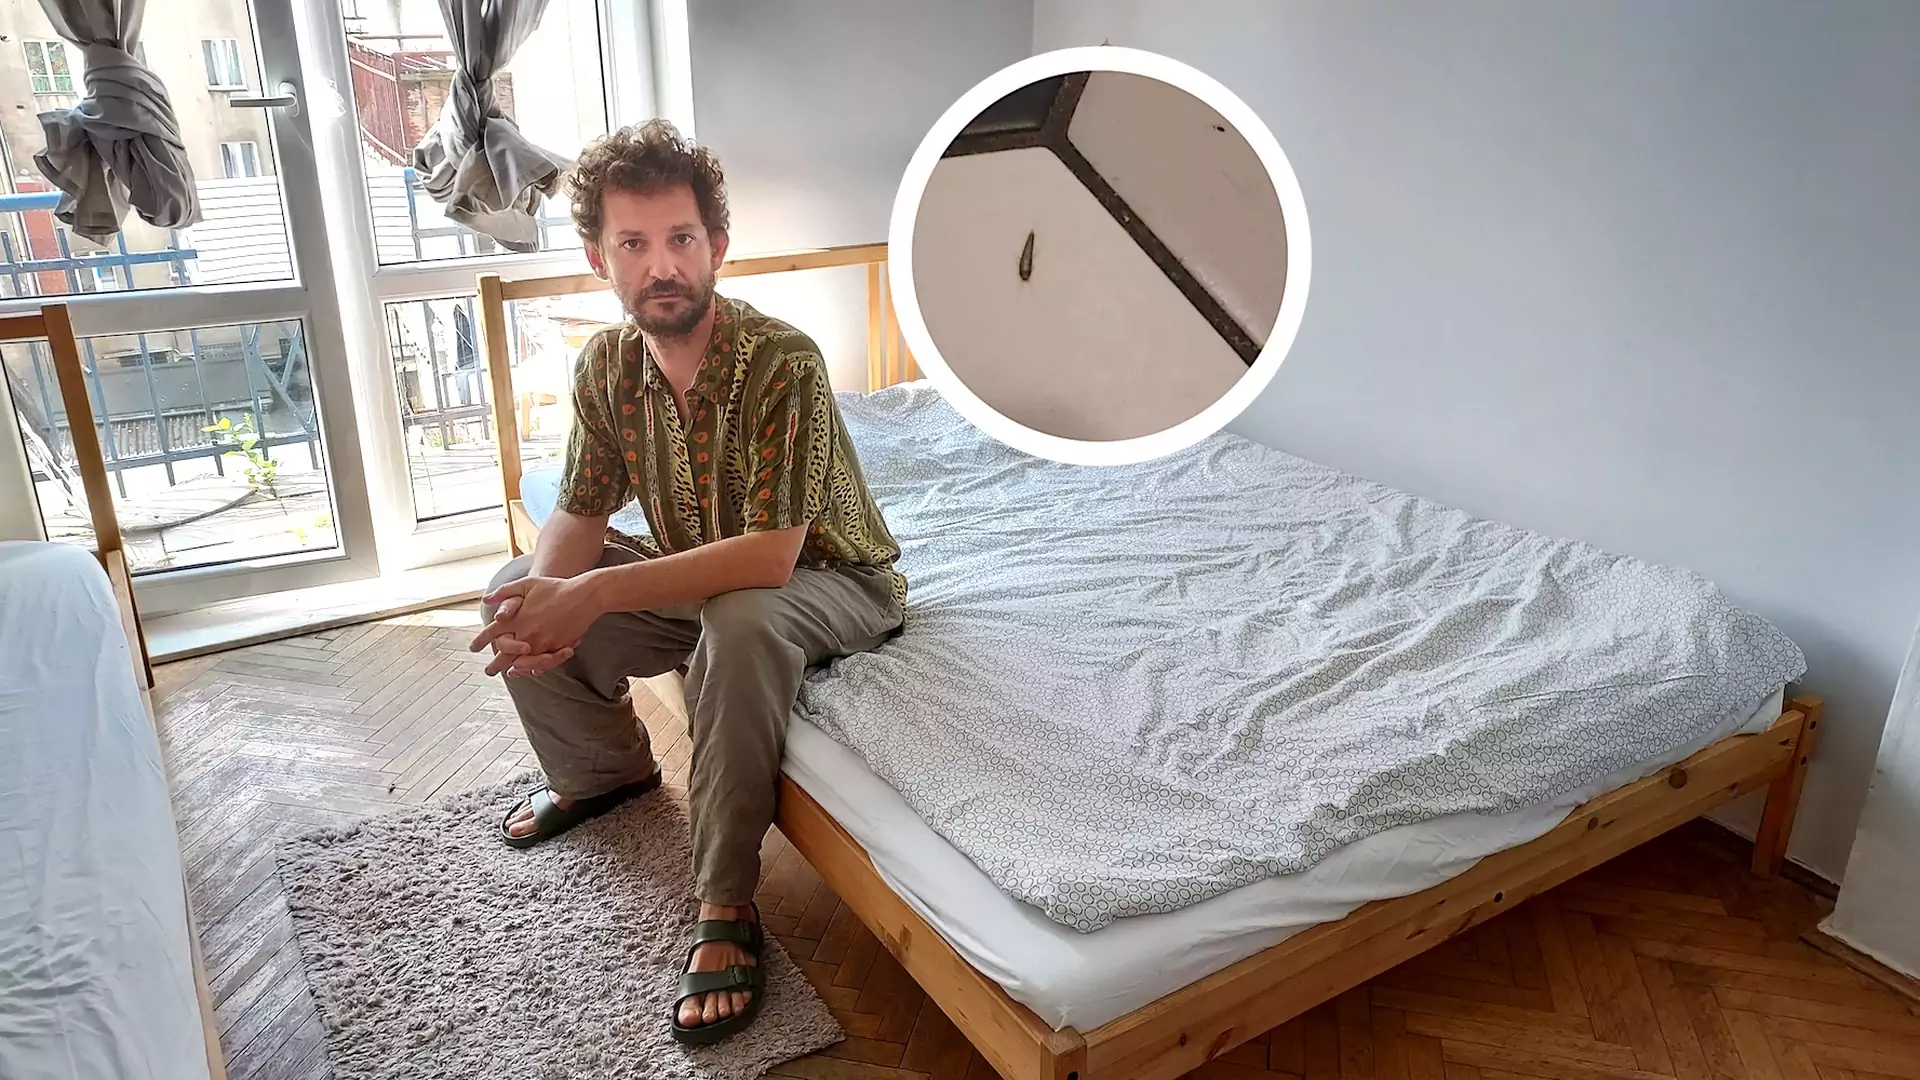 Spałem w najgorzej ocenianym hostelu w Gdyni. Brud, rybik i hałas